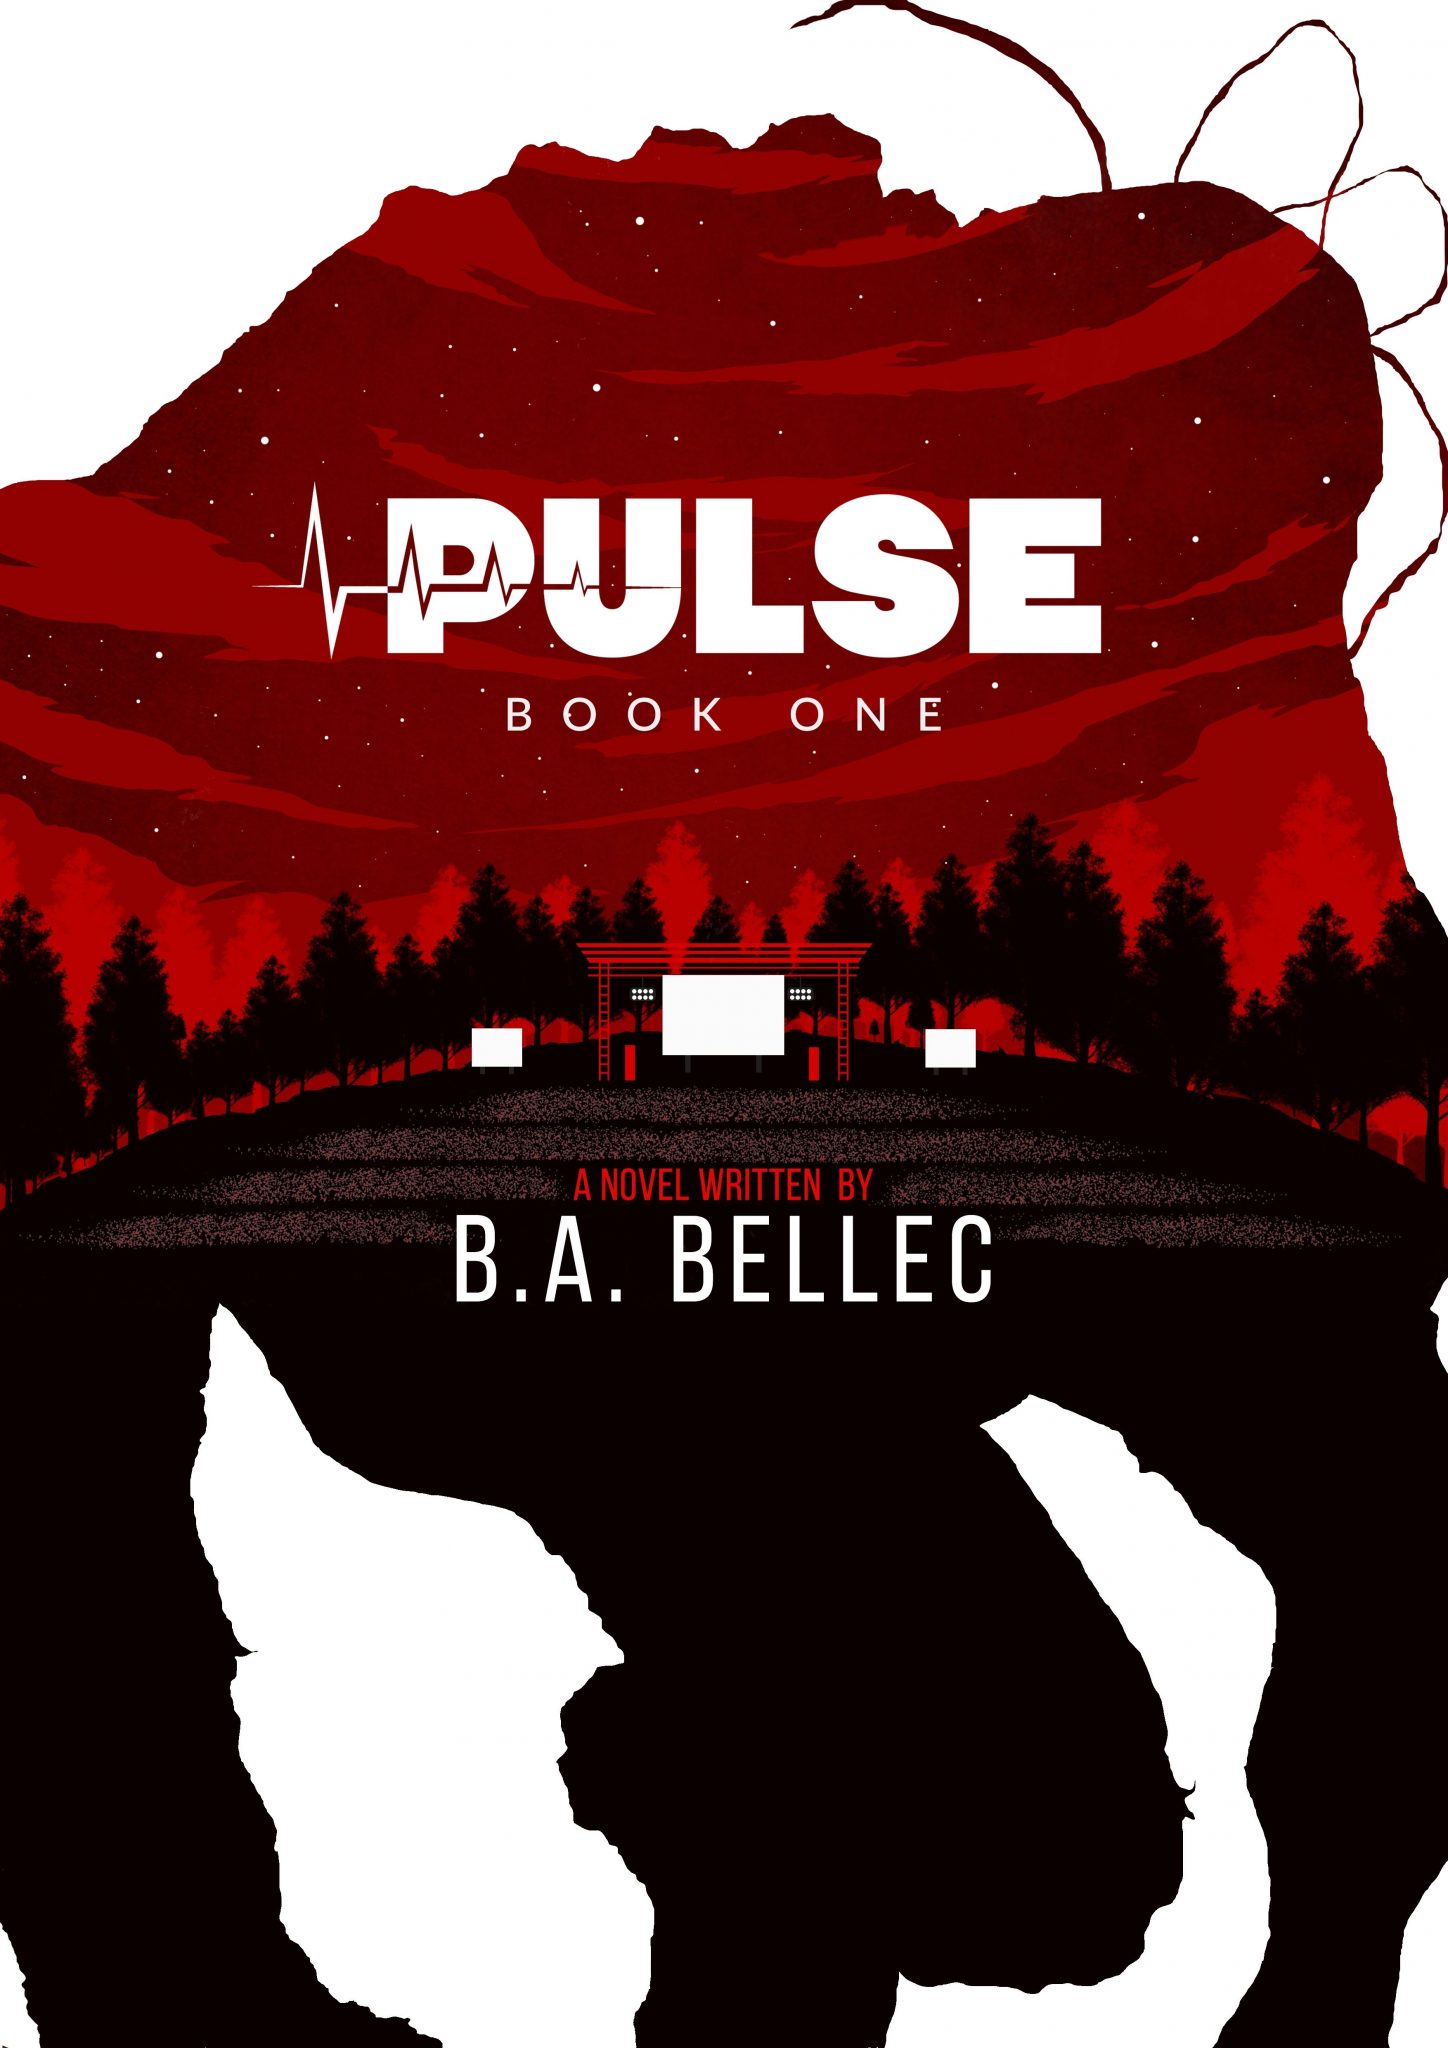 Pulse by B.A. Bellec